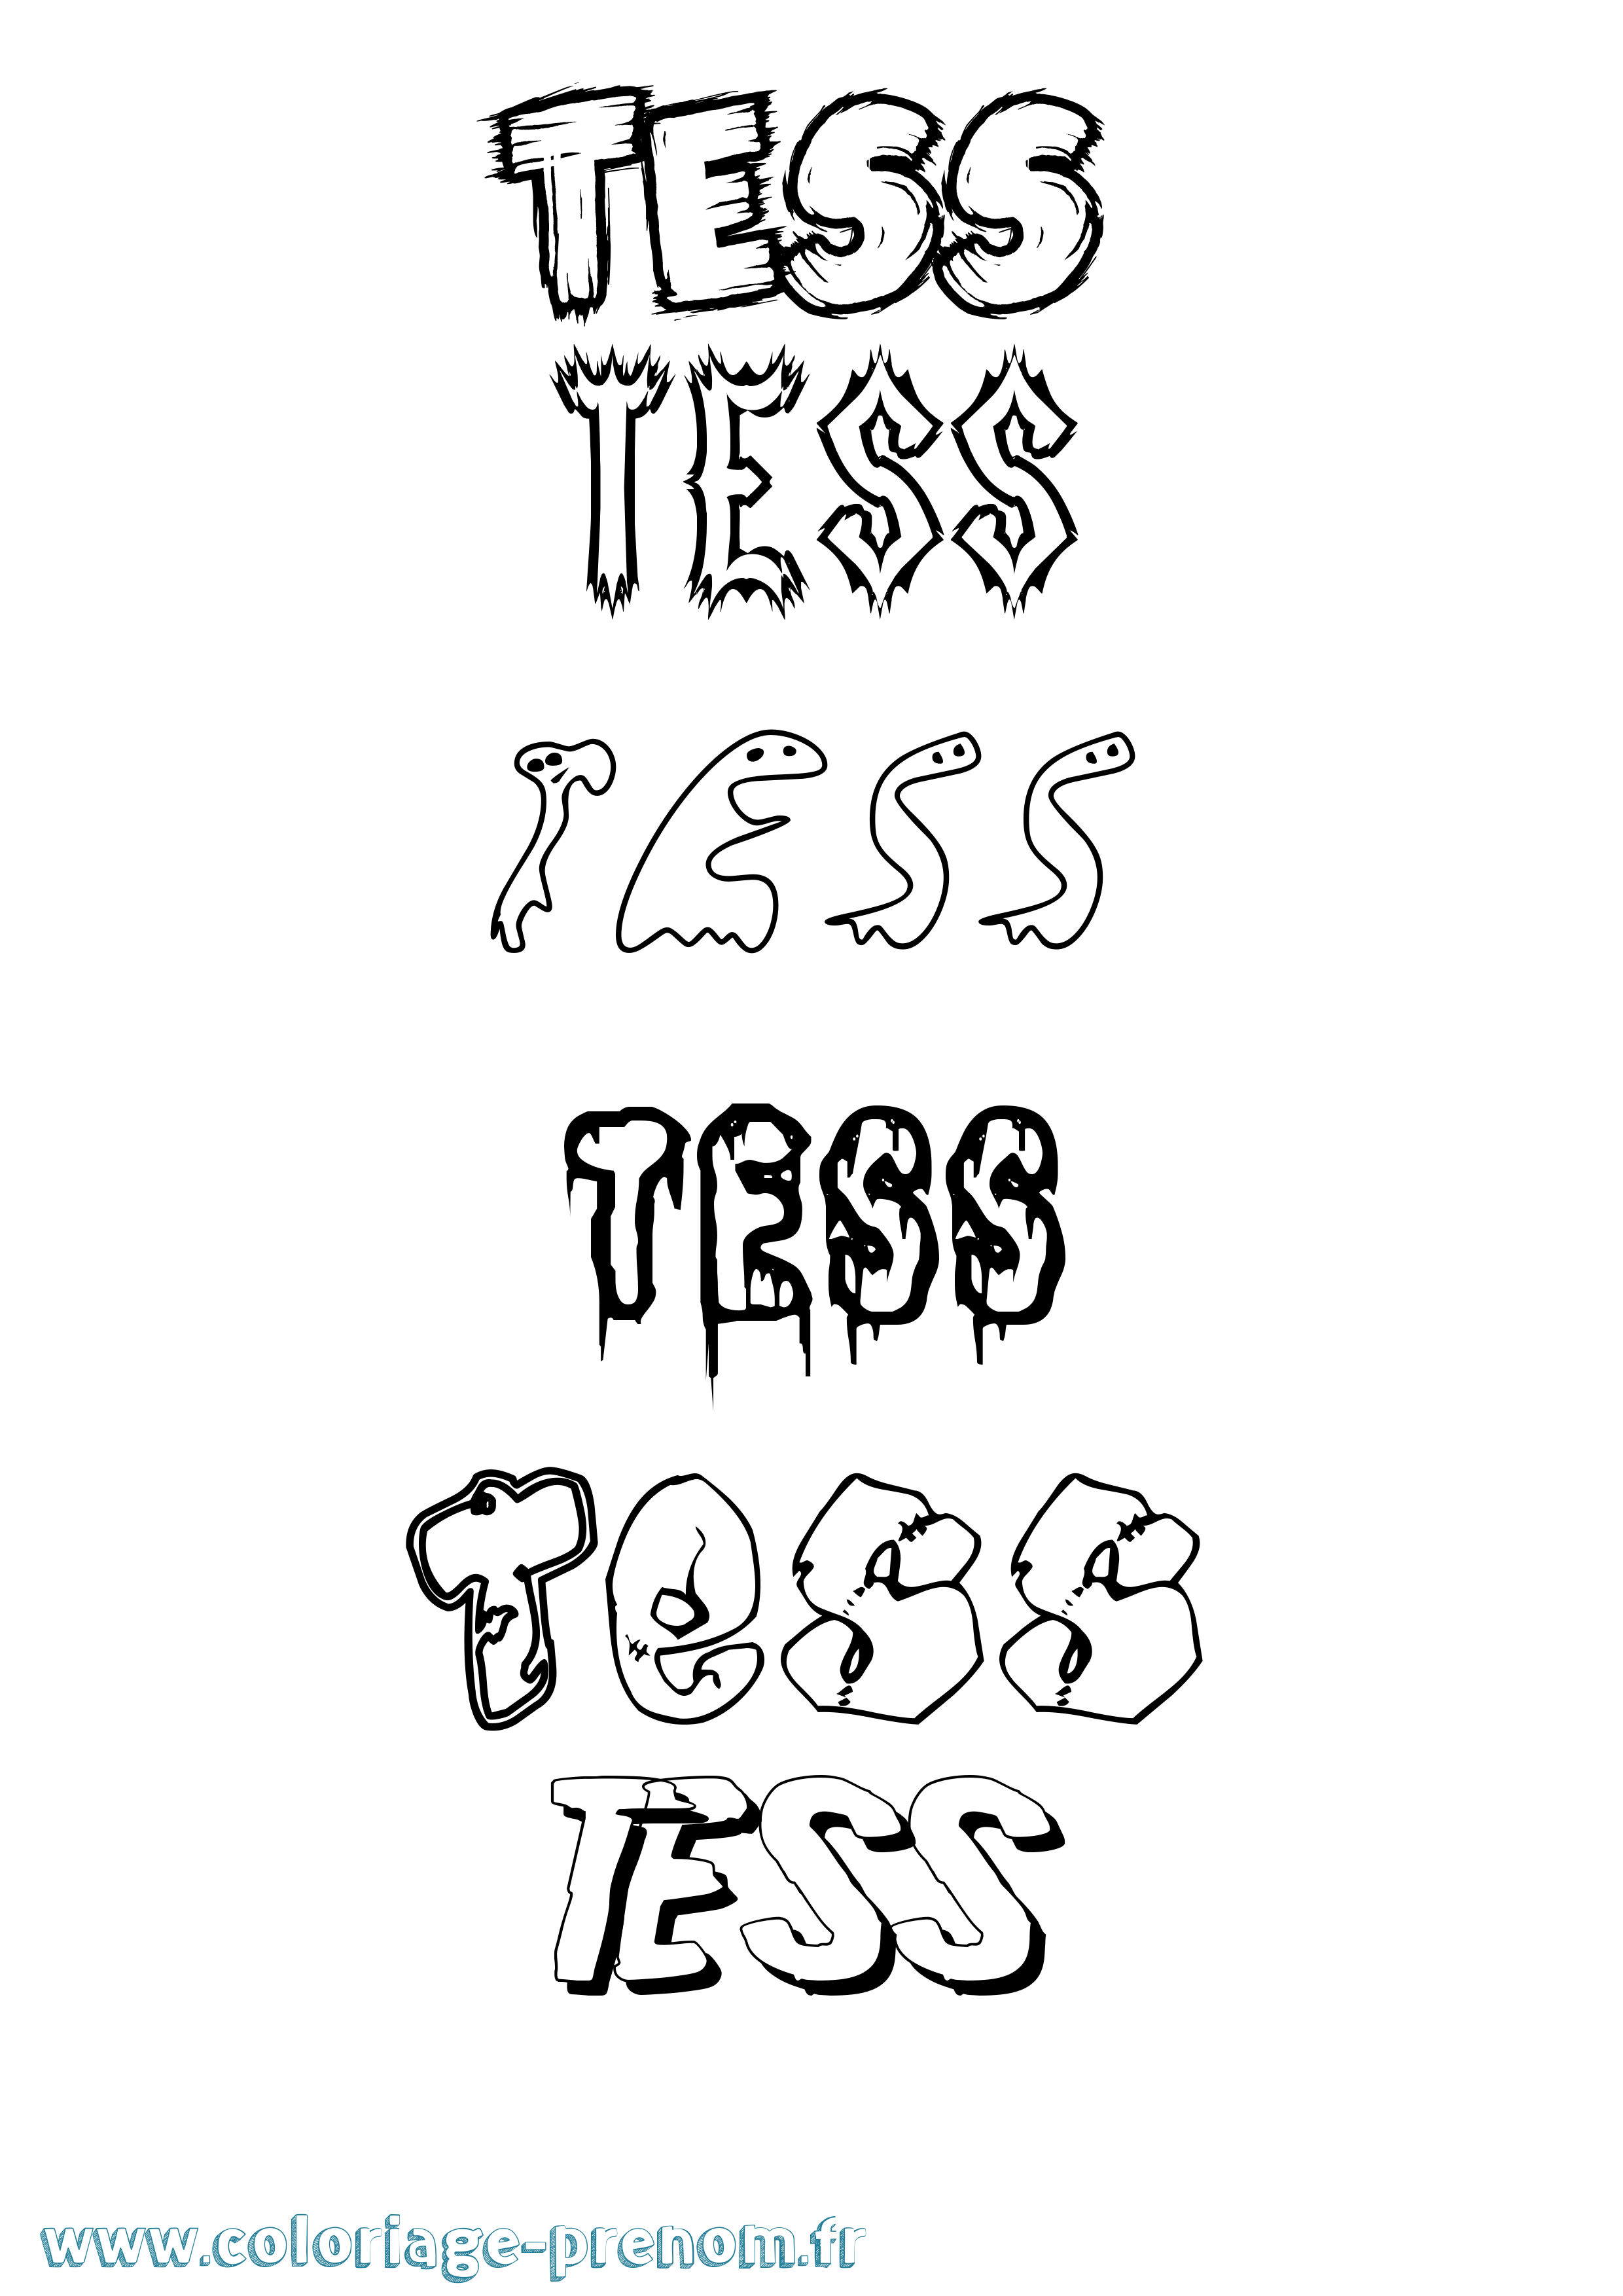 Coloriage prénom Tess Frisson